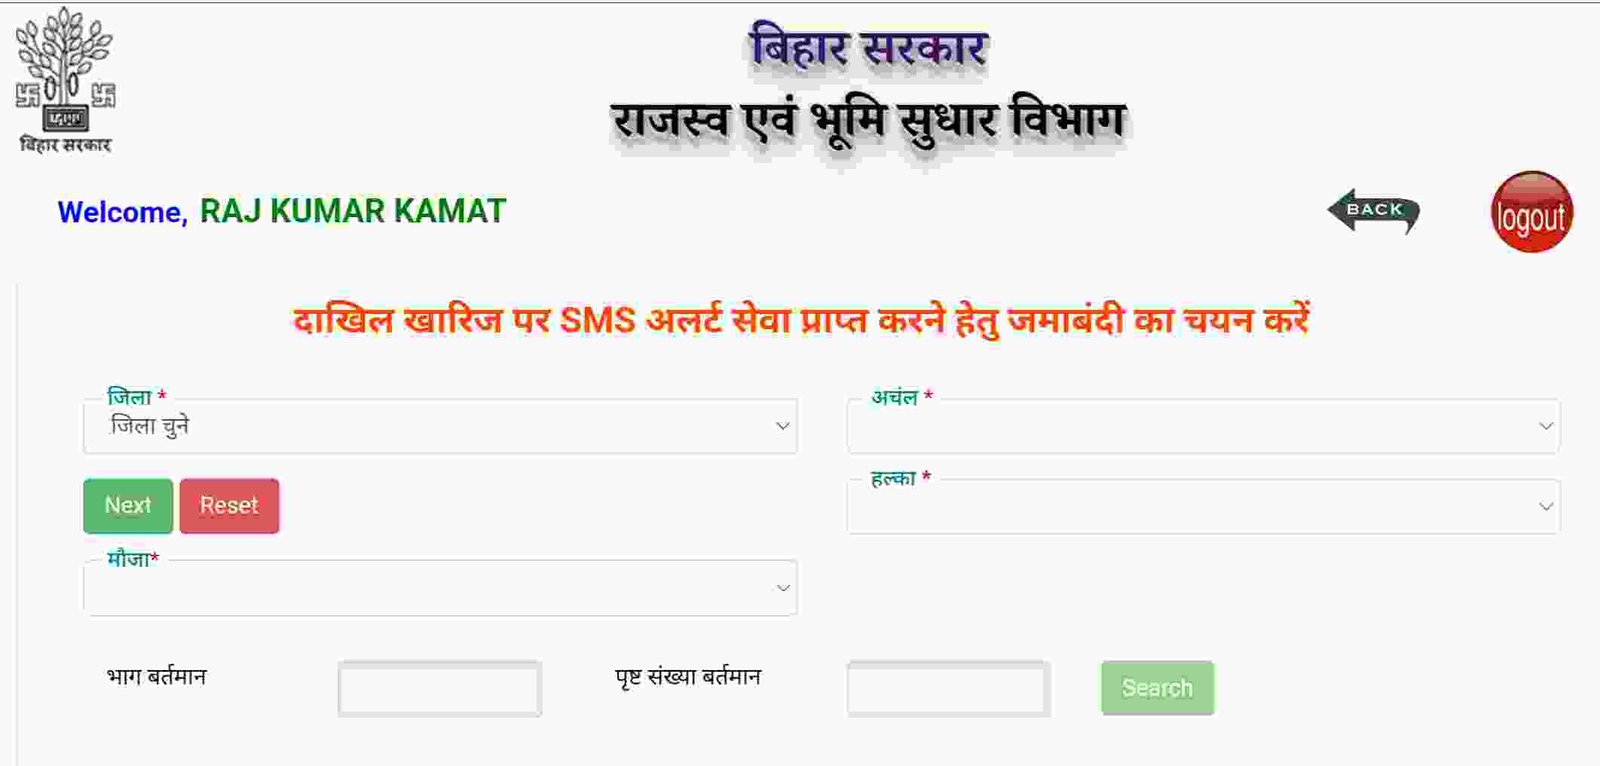 Bihar Bhumi SMS Alert Service Online